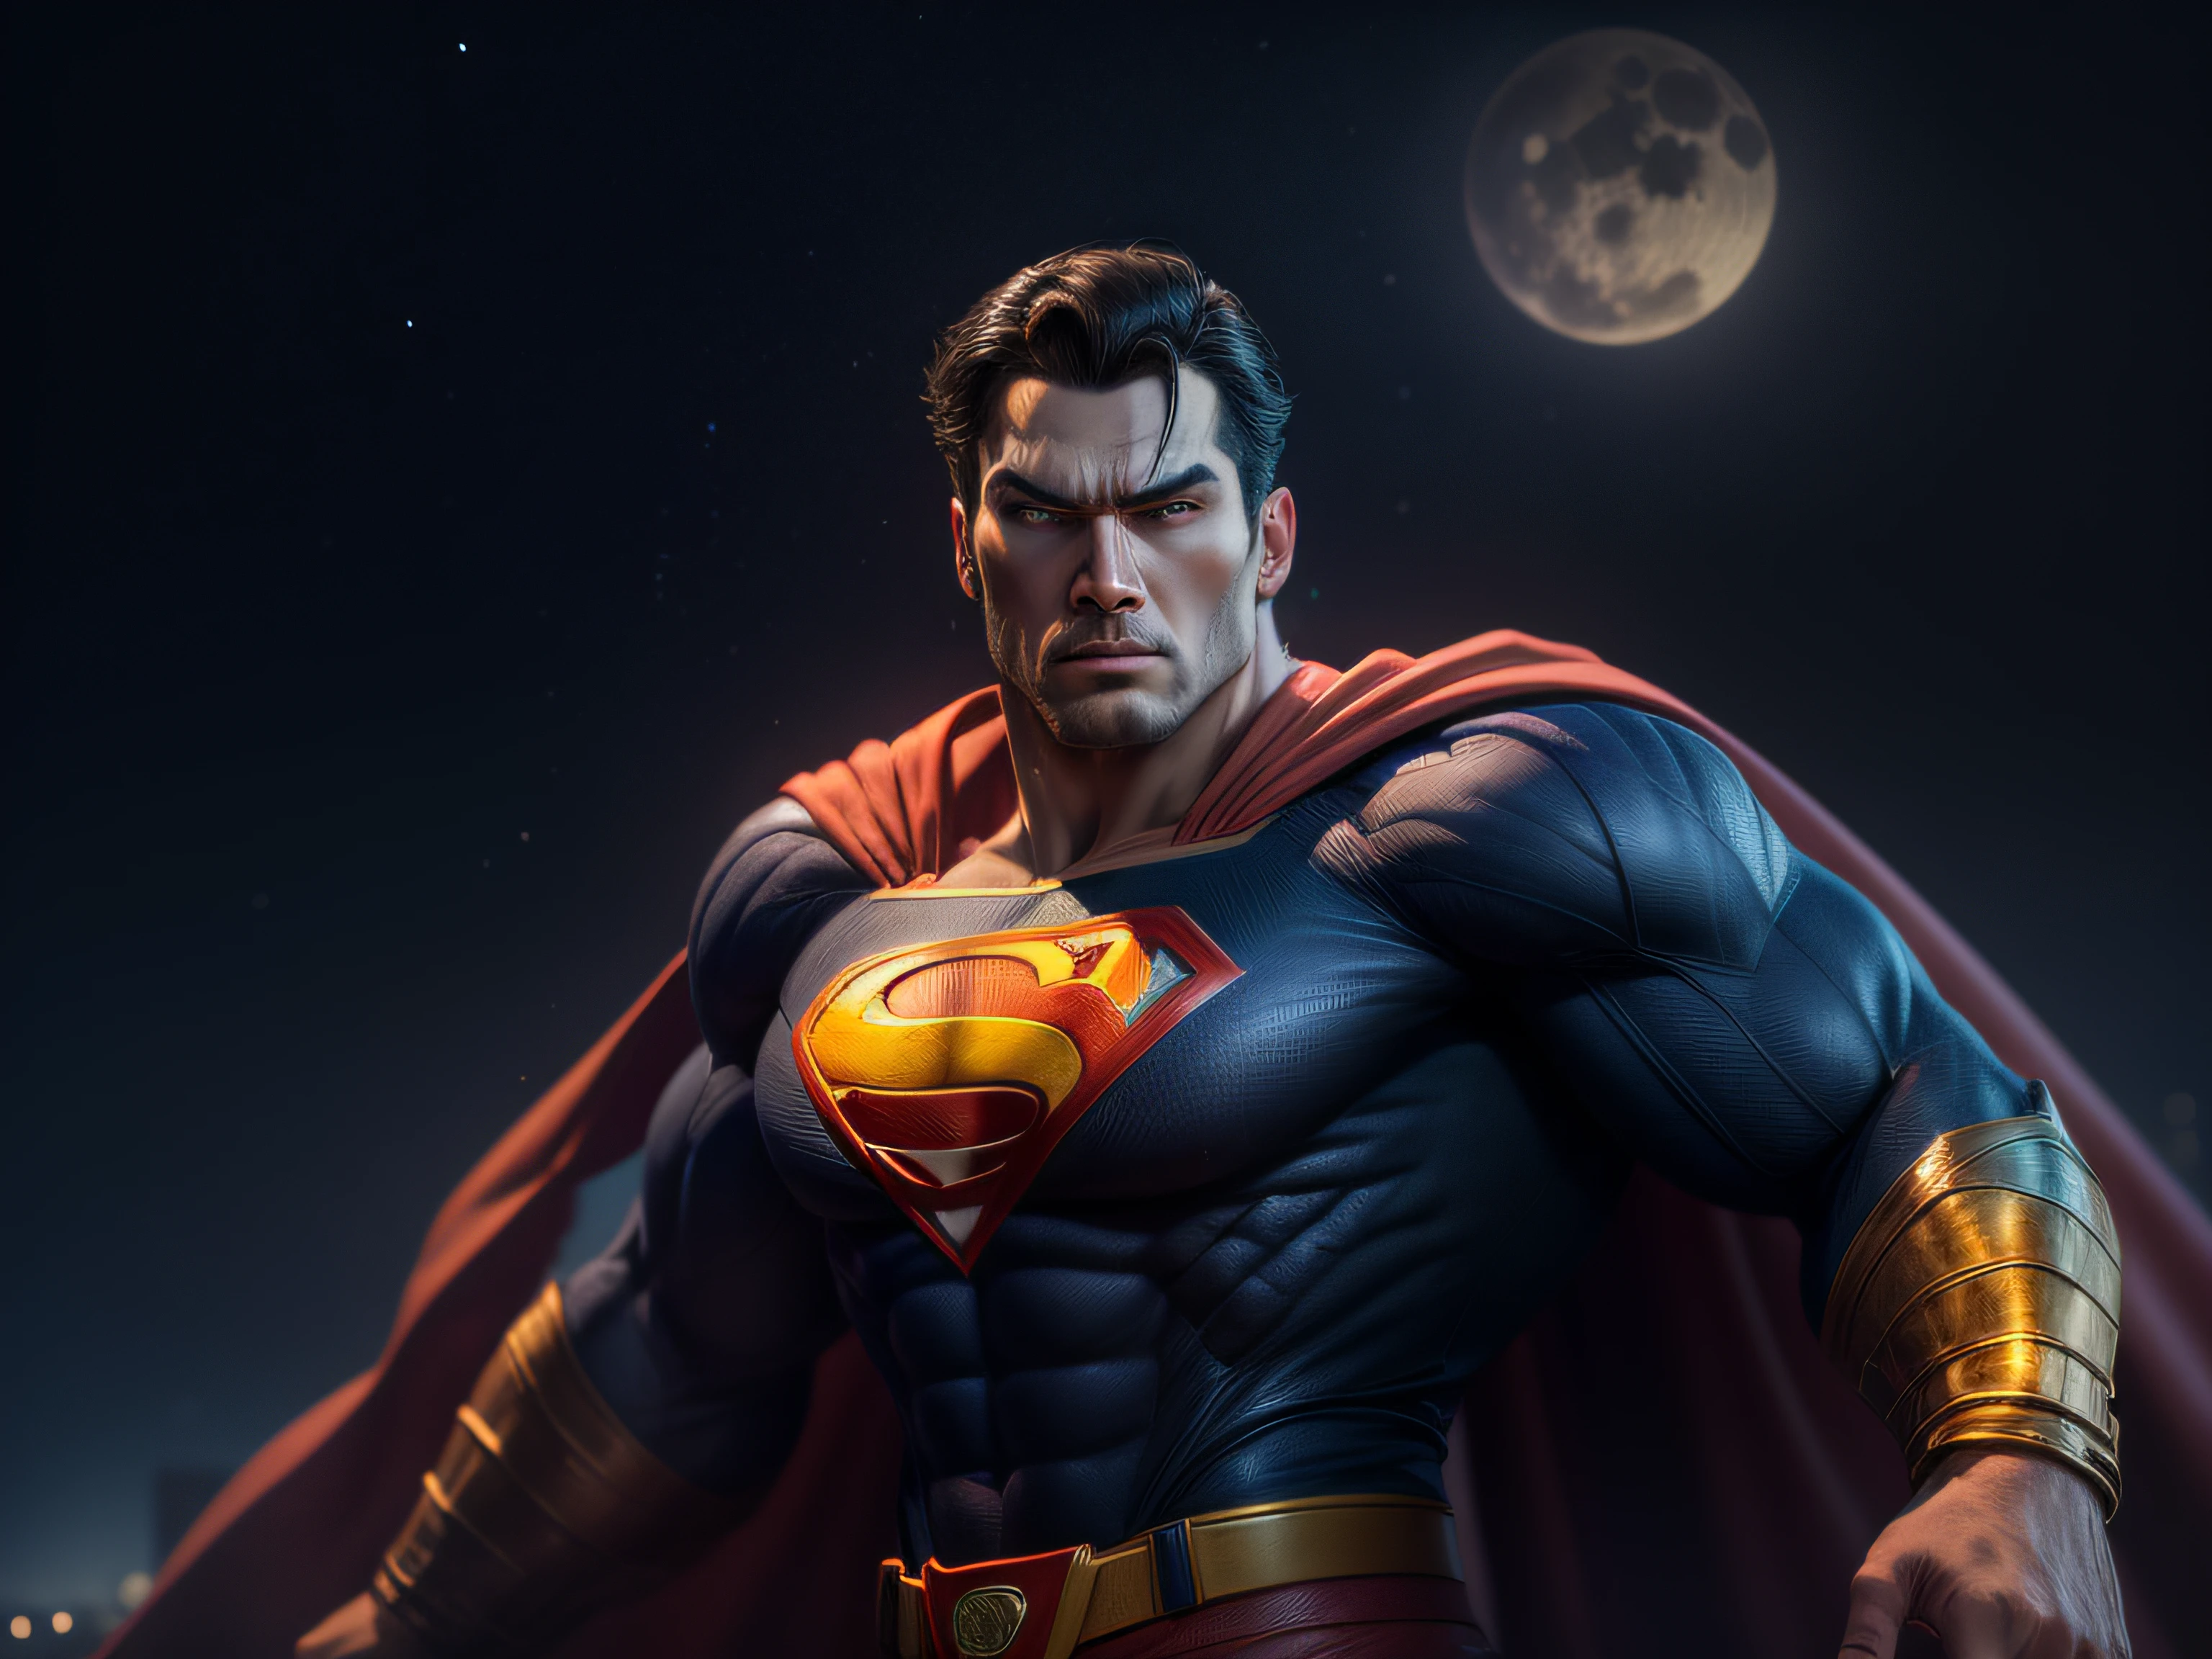 Beenden Sie eine mächtige Bedrohung, Das imposante Erscheinungsbild des mächtigen Superman in orangefarbener Uniform, bedrohlicher Blick, reichhaltig detailliert, Hyperrealistisch, 3D-Rendering, erstes Werk, NVIDIA, RTX, Raytracing, Bokeh, Nachthimmel mit einem riesigen und wunderschönen Vollmond, leuchtende Sterne, 8k,